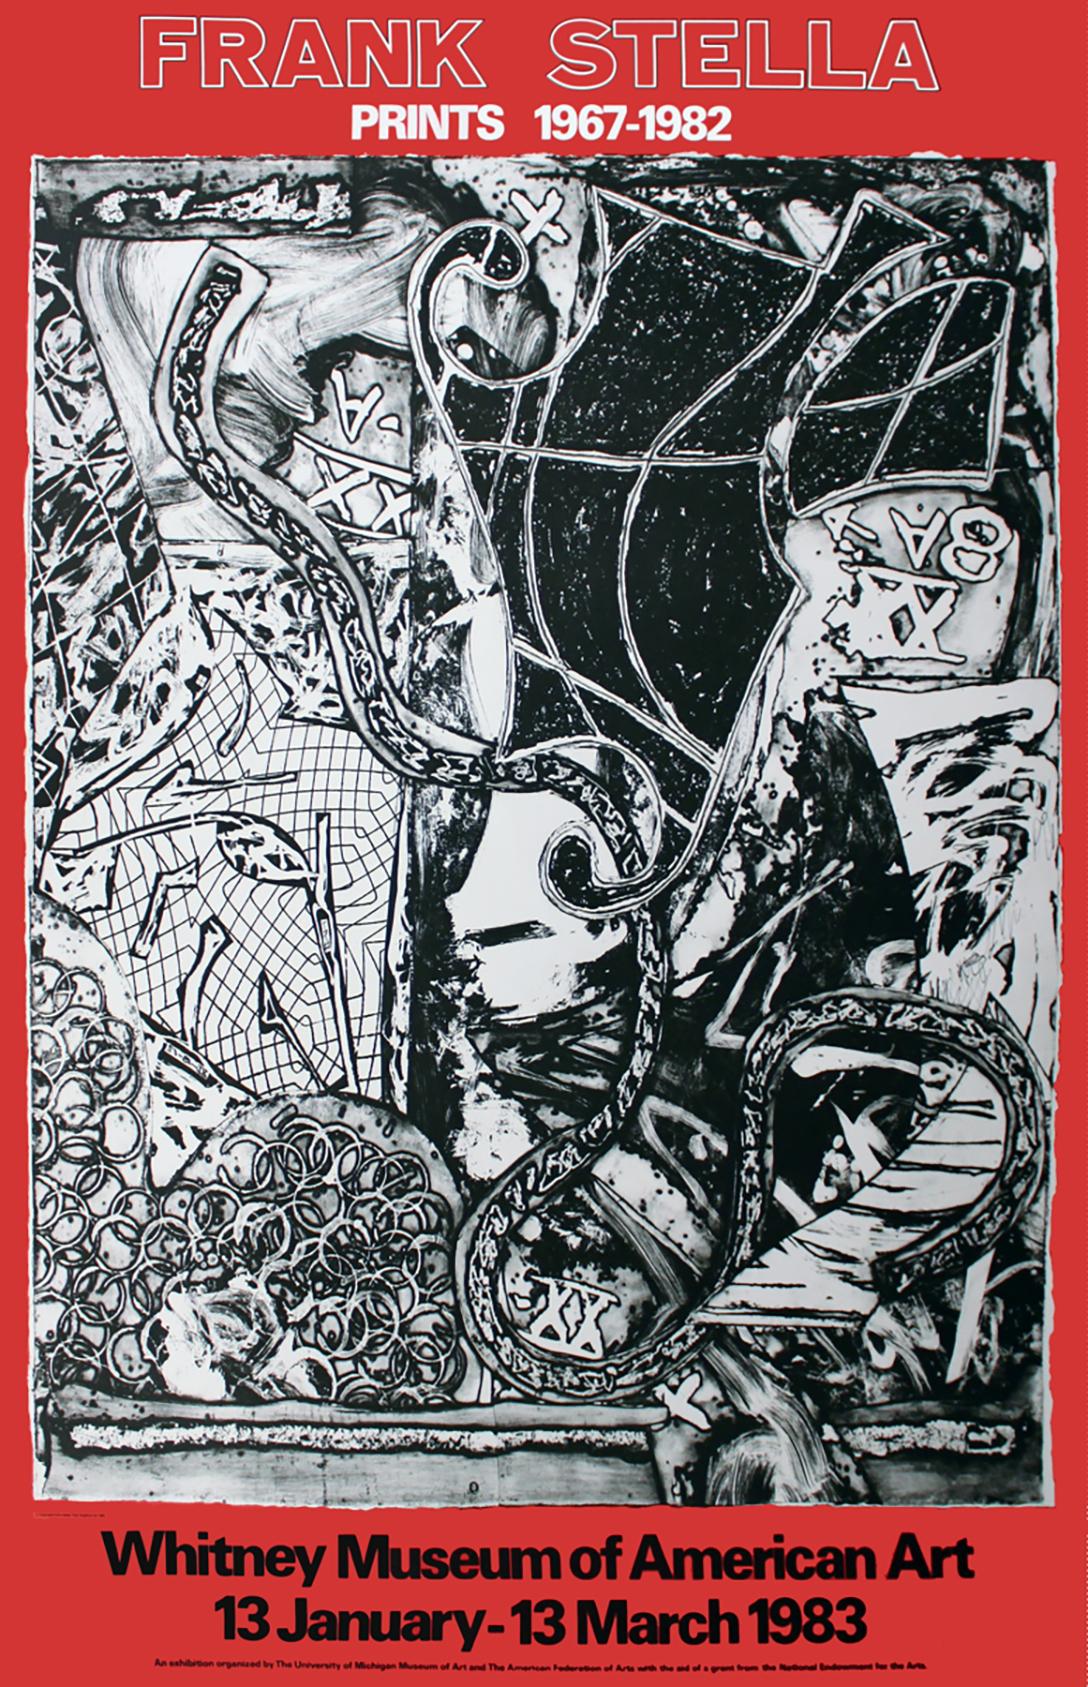 Frank Stella (après)
"Gravures 1967-1982
Whitney Museum of American Art, New York, 1983
Affiche en lithographie offset
74 3/4 × 52 1/4 pouces
Non signé

Cette affiche a été créée pour l'exposition de Frank Stella "Prints 1967-1982" au Whitney Museum